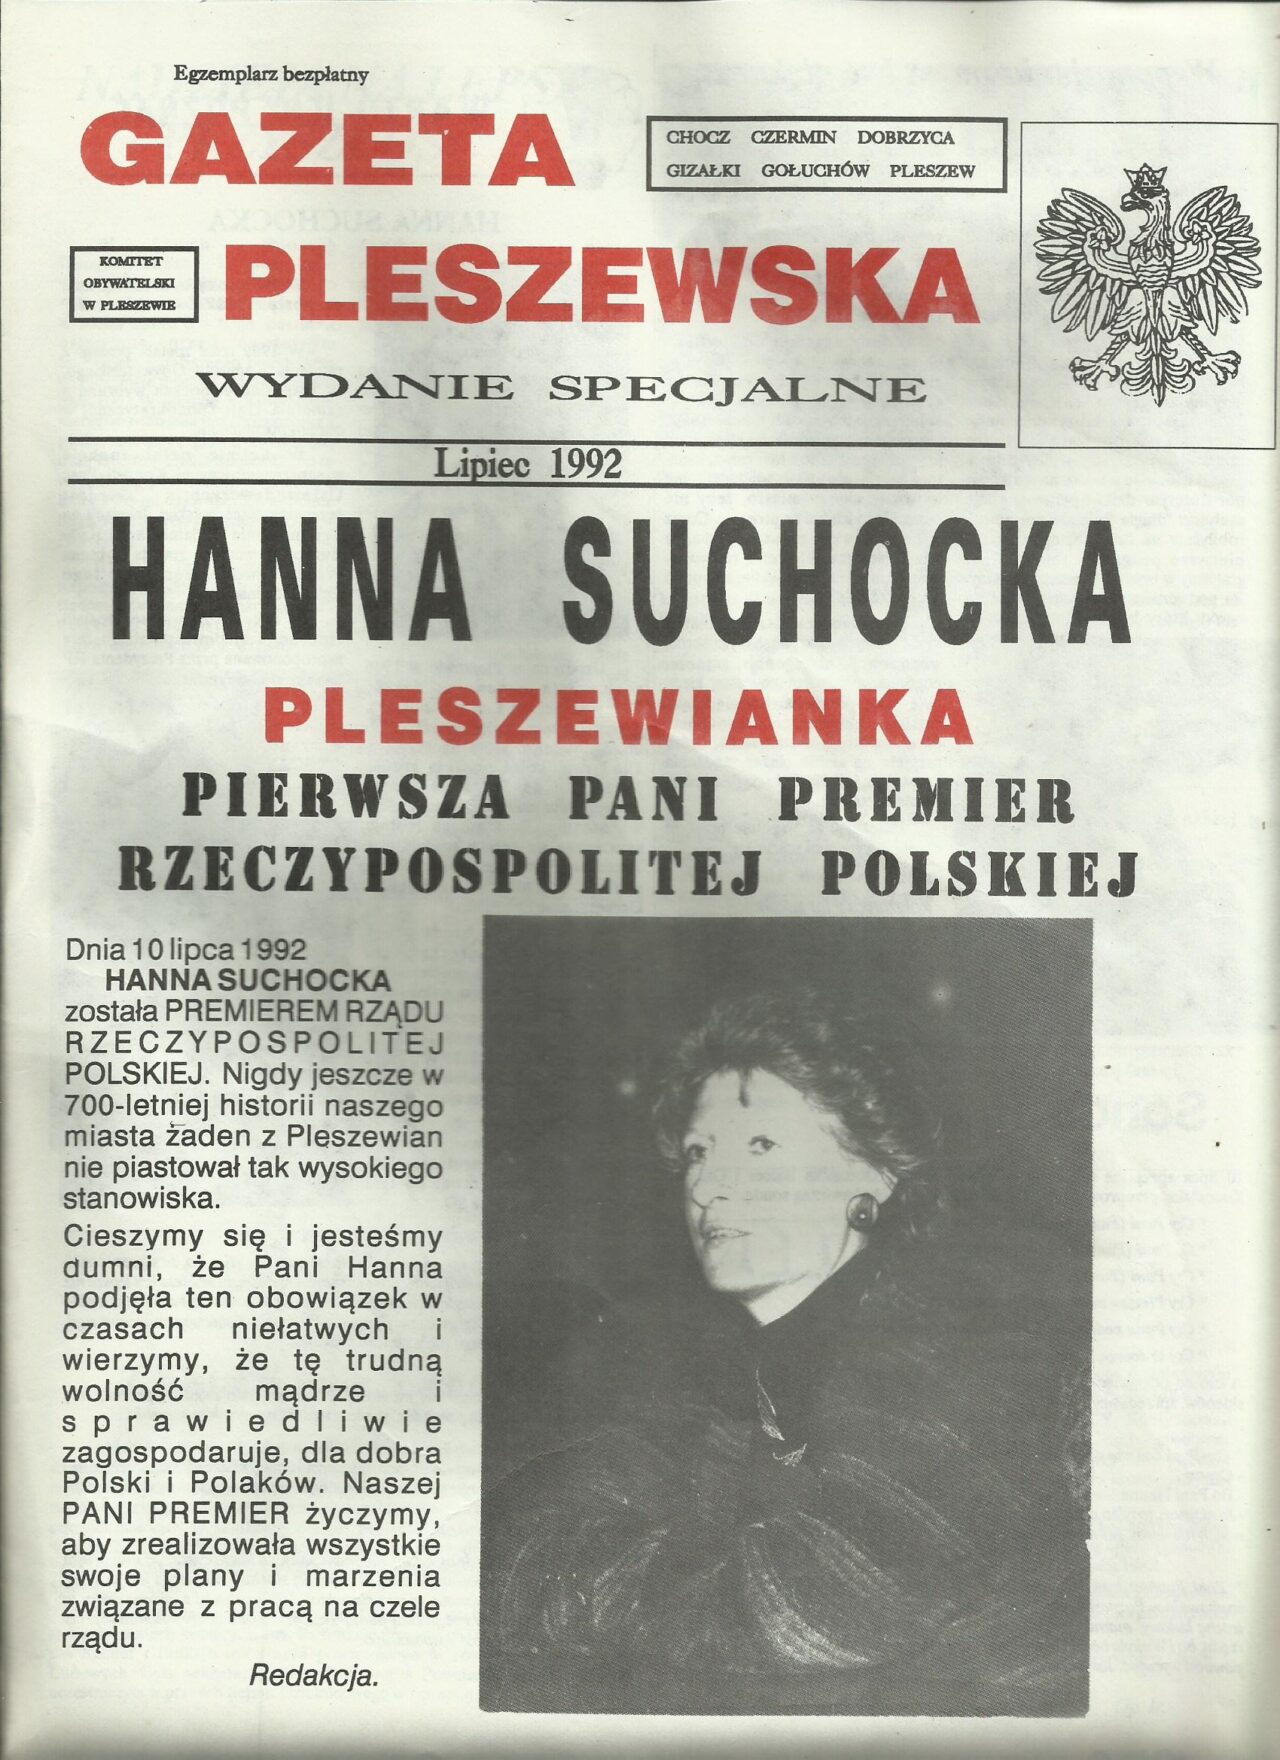 Gazeta-Pleszewska-lipiec-1992-1280x1760.jpg